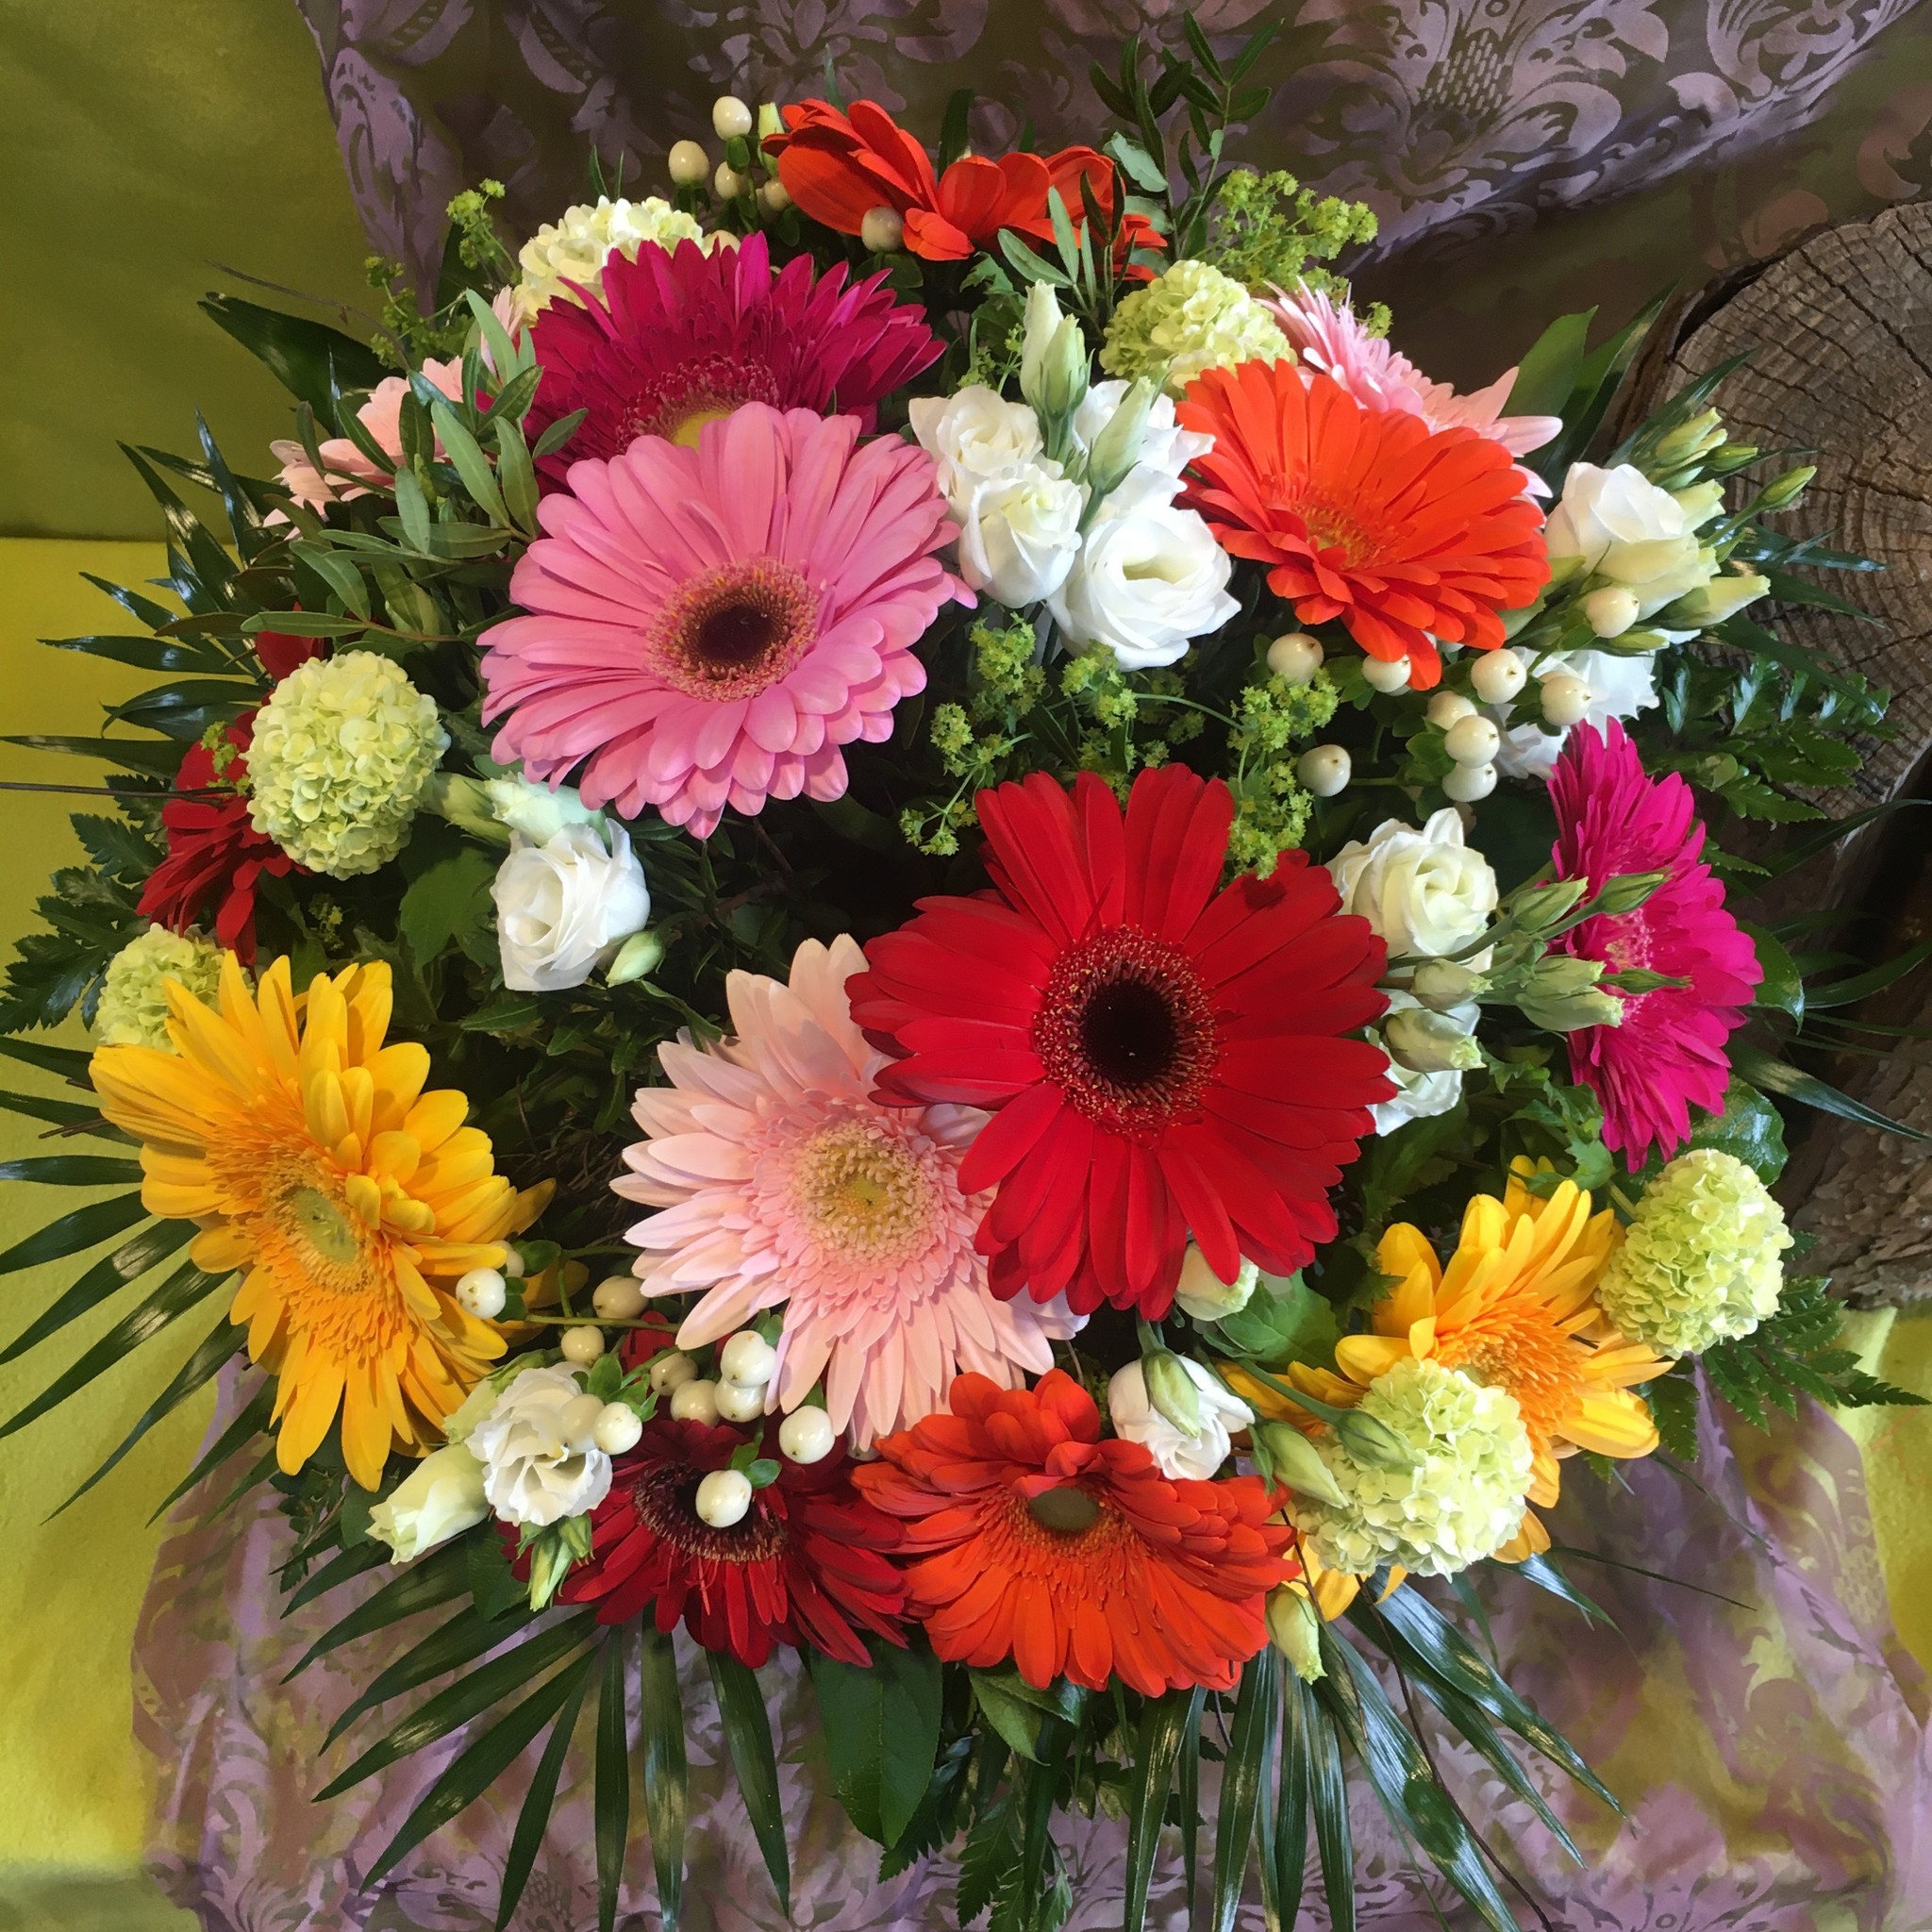 Gerbera  Strauß bunt gemischt mit anderen Blumen XL